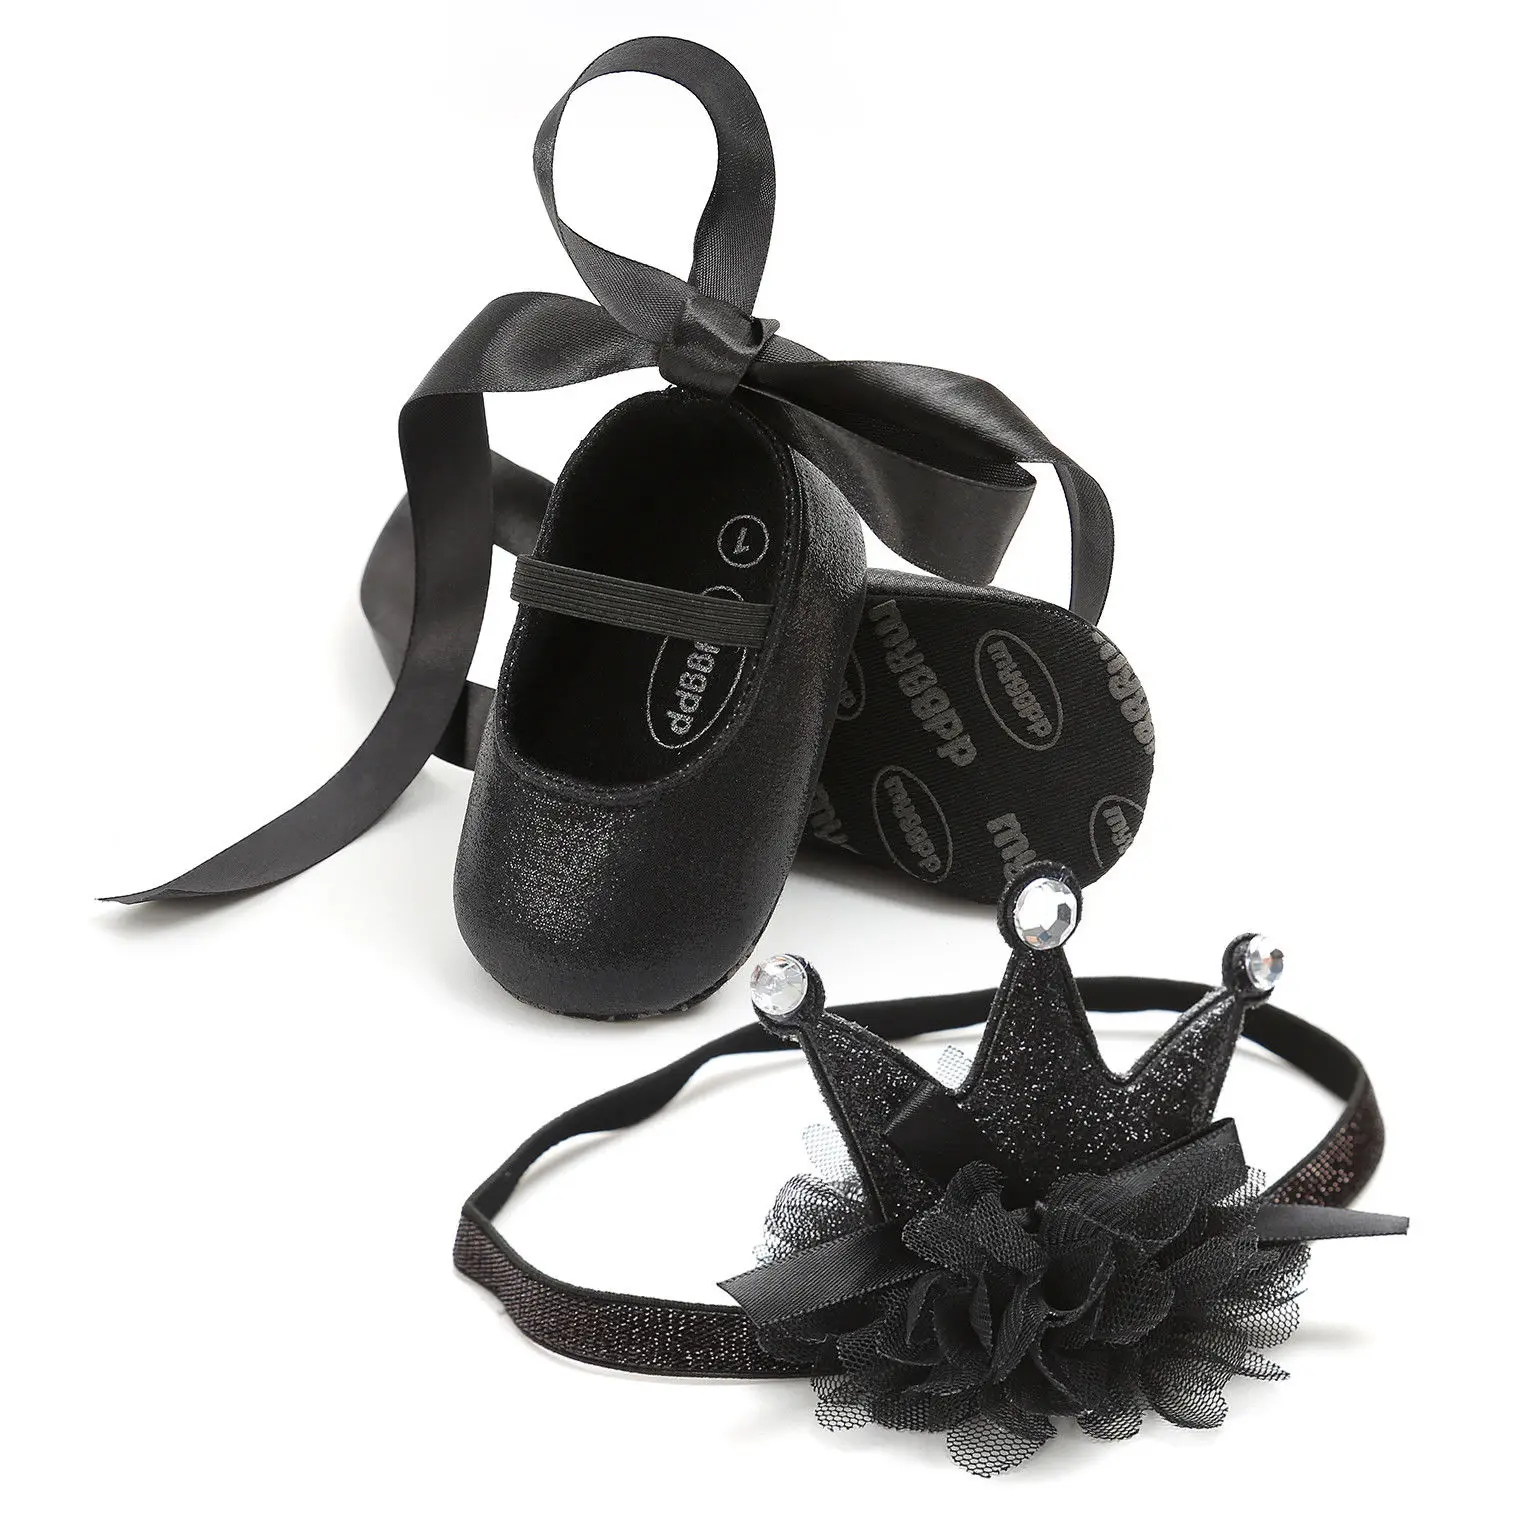 Pudcoco/Модная обувь принцессы с цветочным рисунком для маленьких девочек; обувь с бантом+ повязка на голову